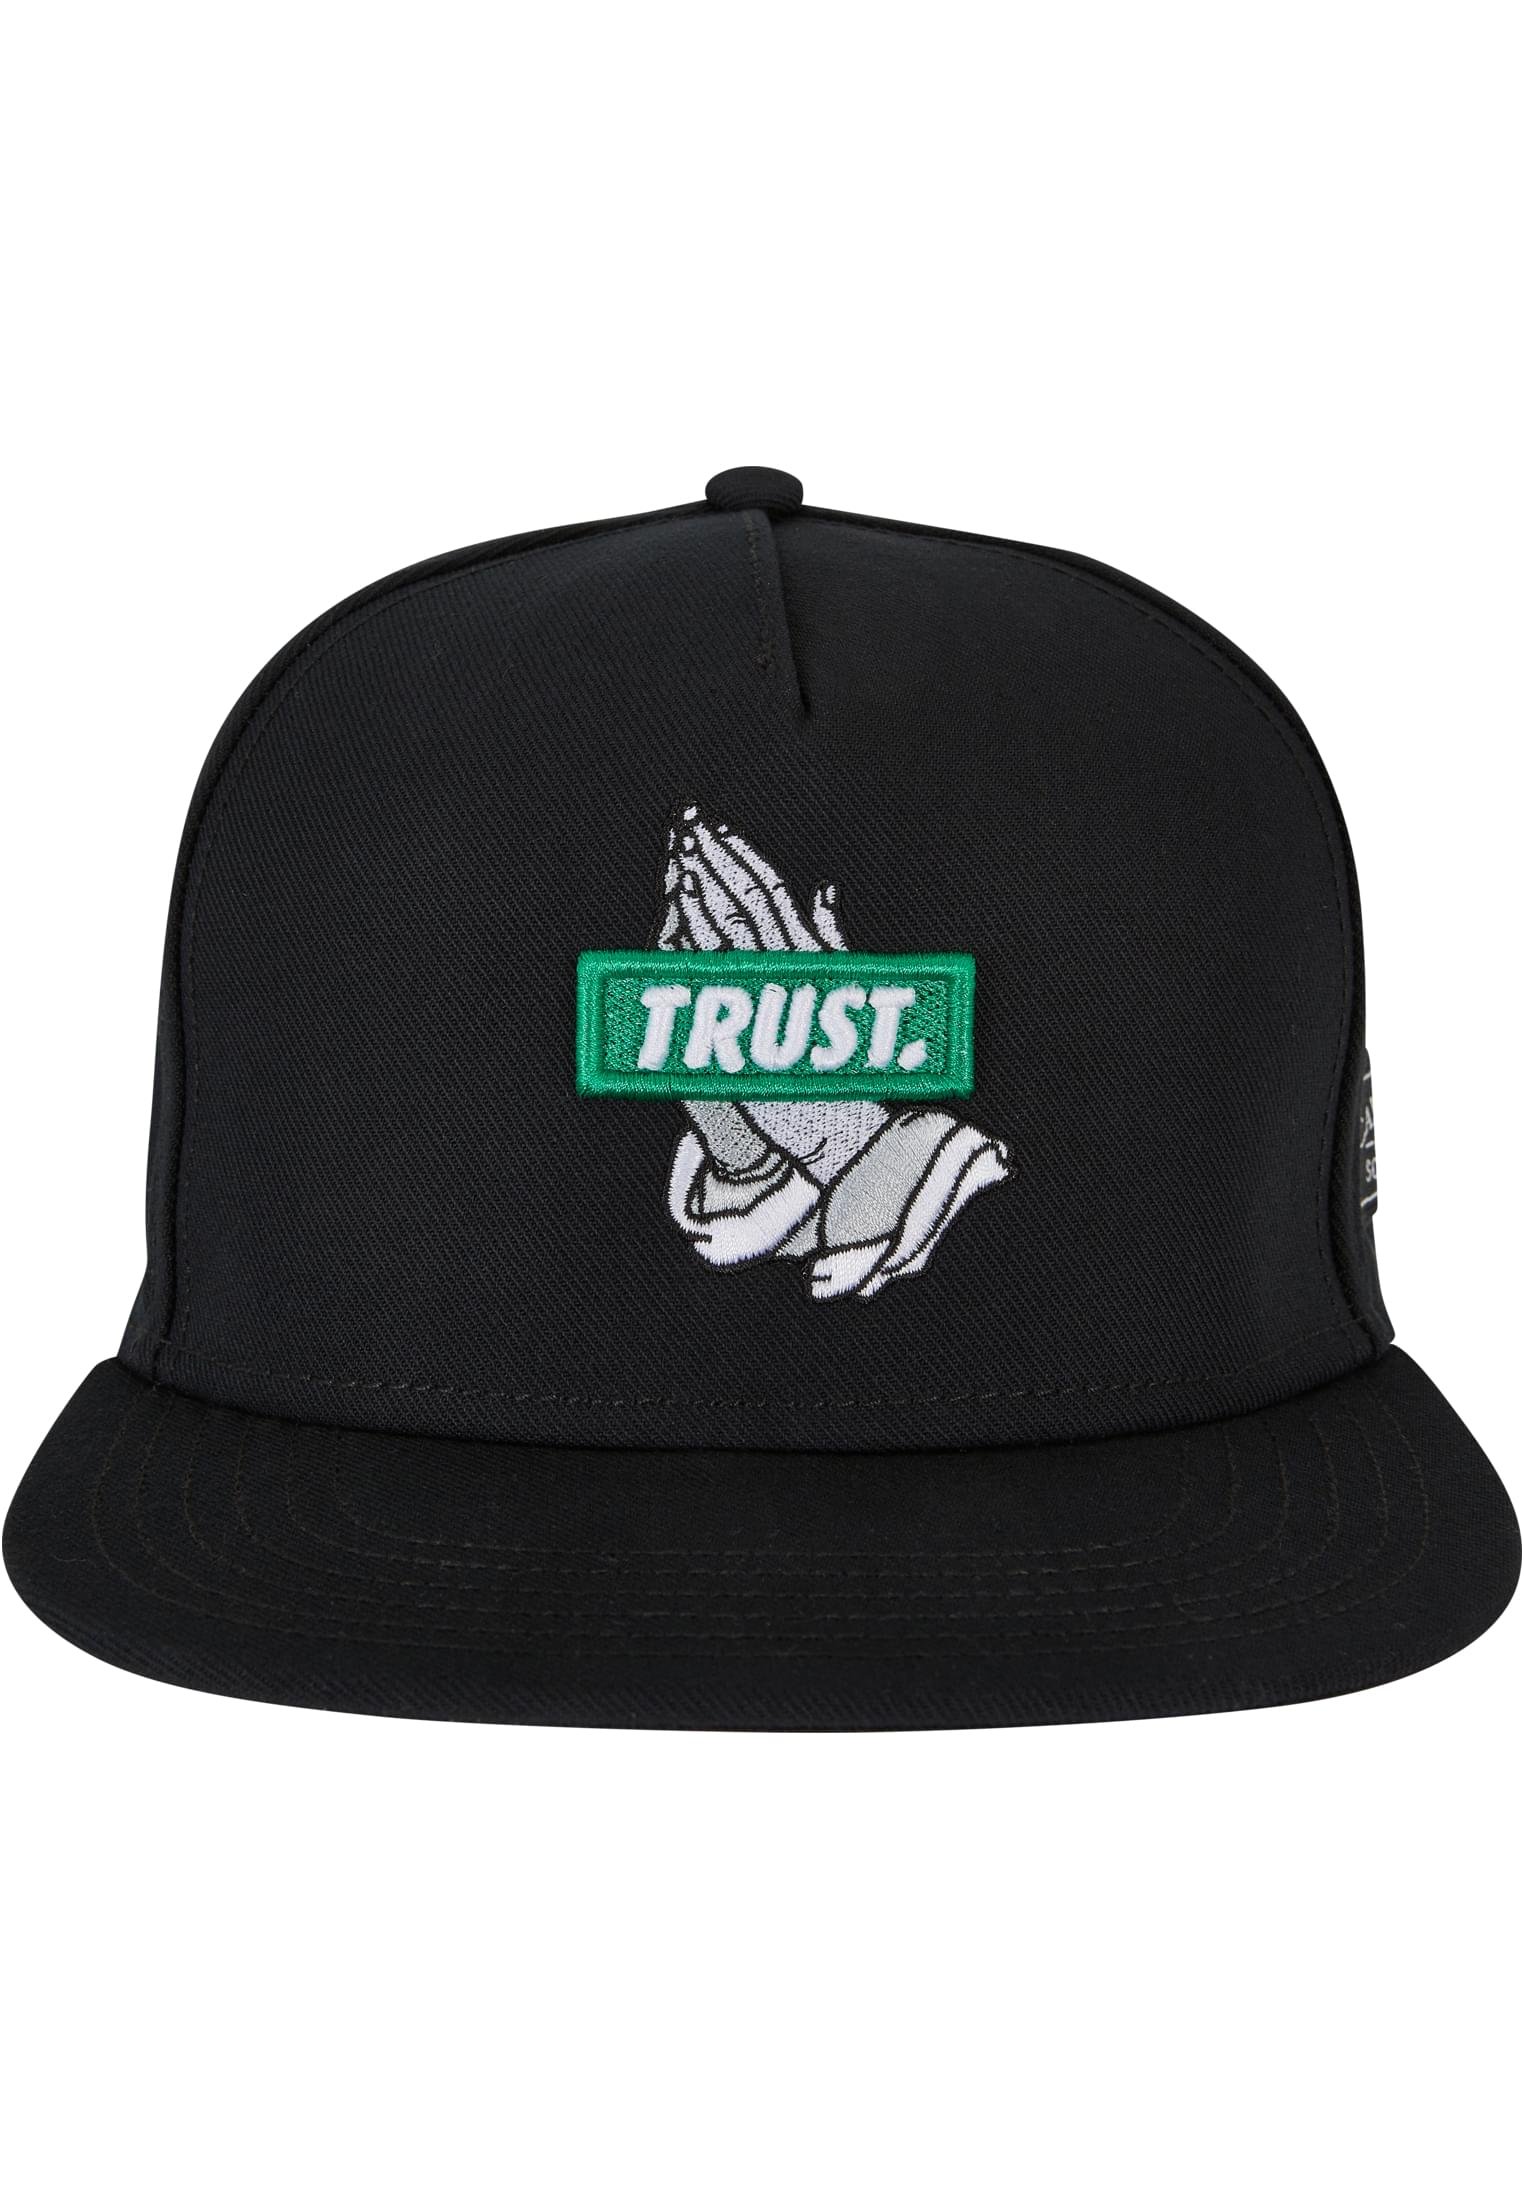 Trust P Cap black one size